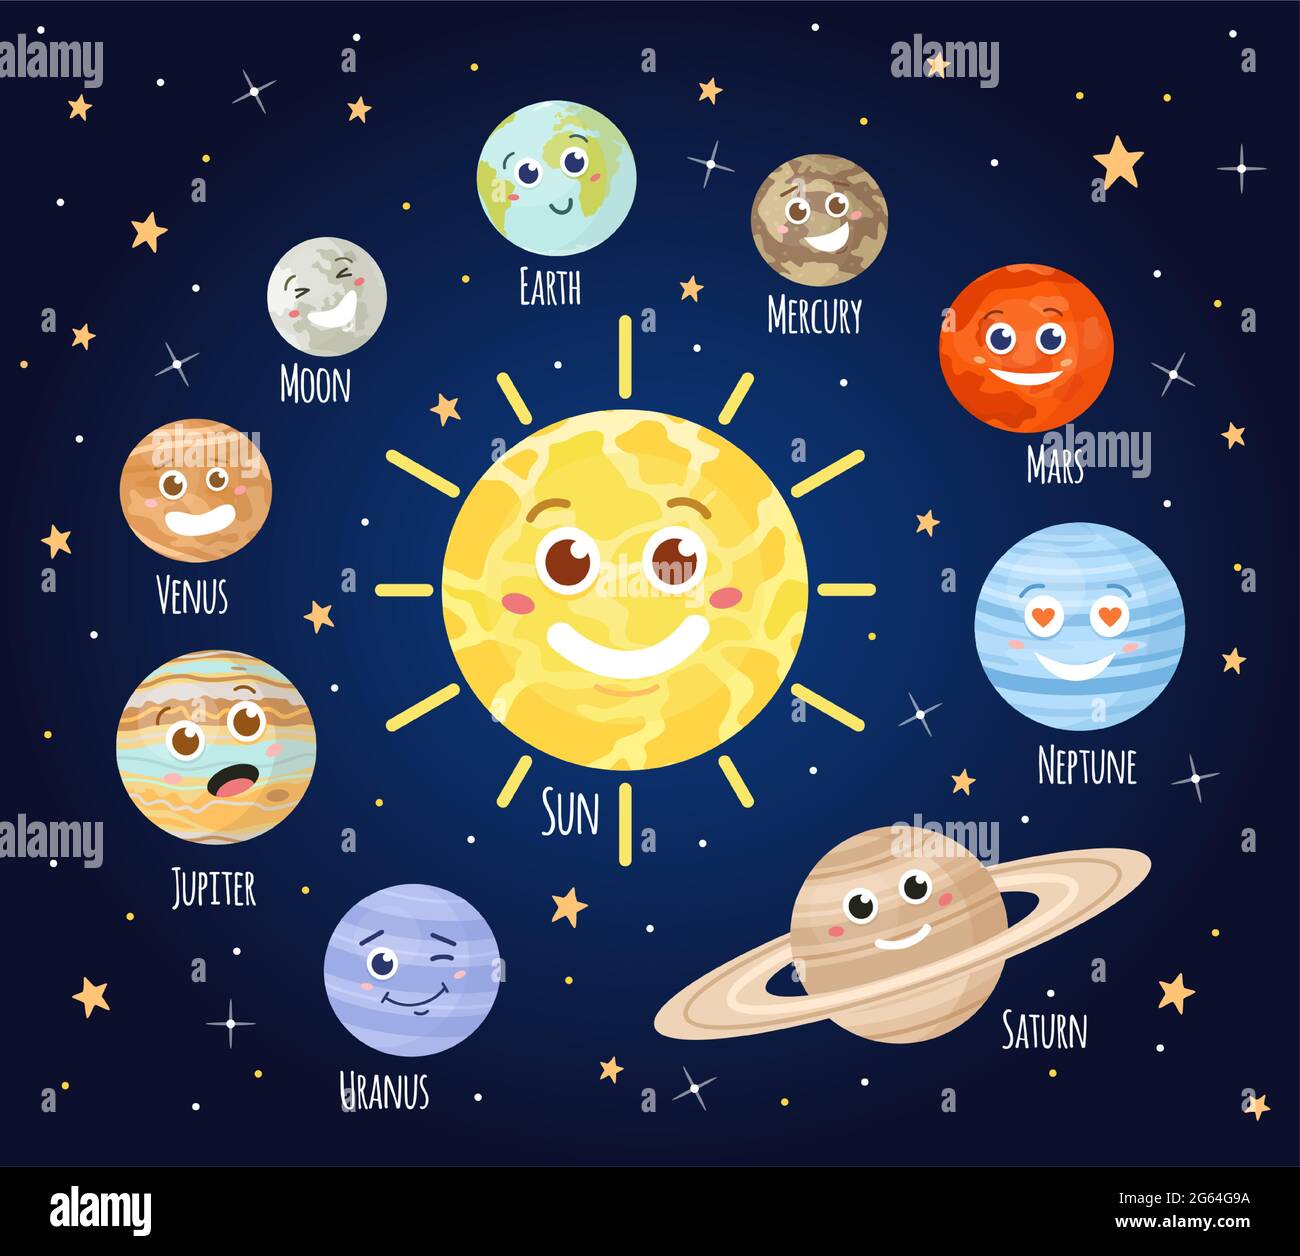 Cartoon planets immagini e fotografie stock ad alta risoluzione - Alamy